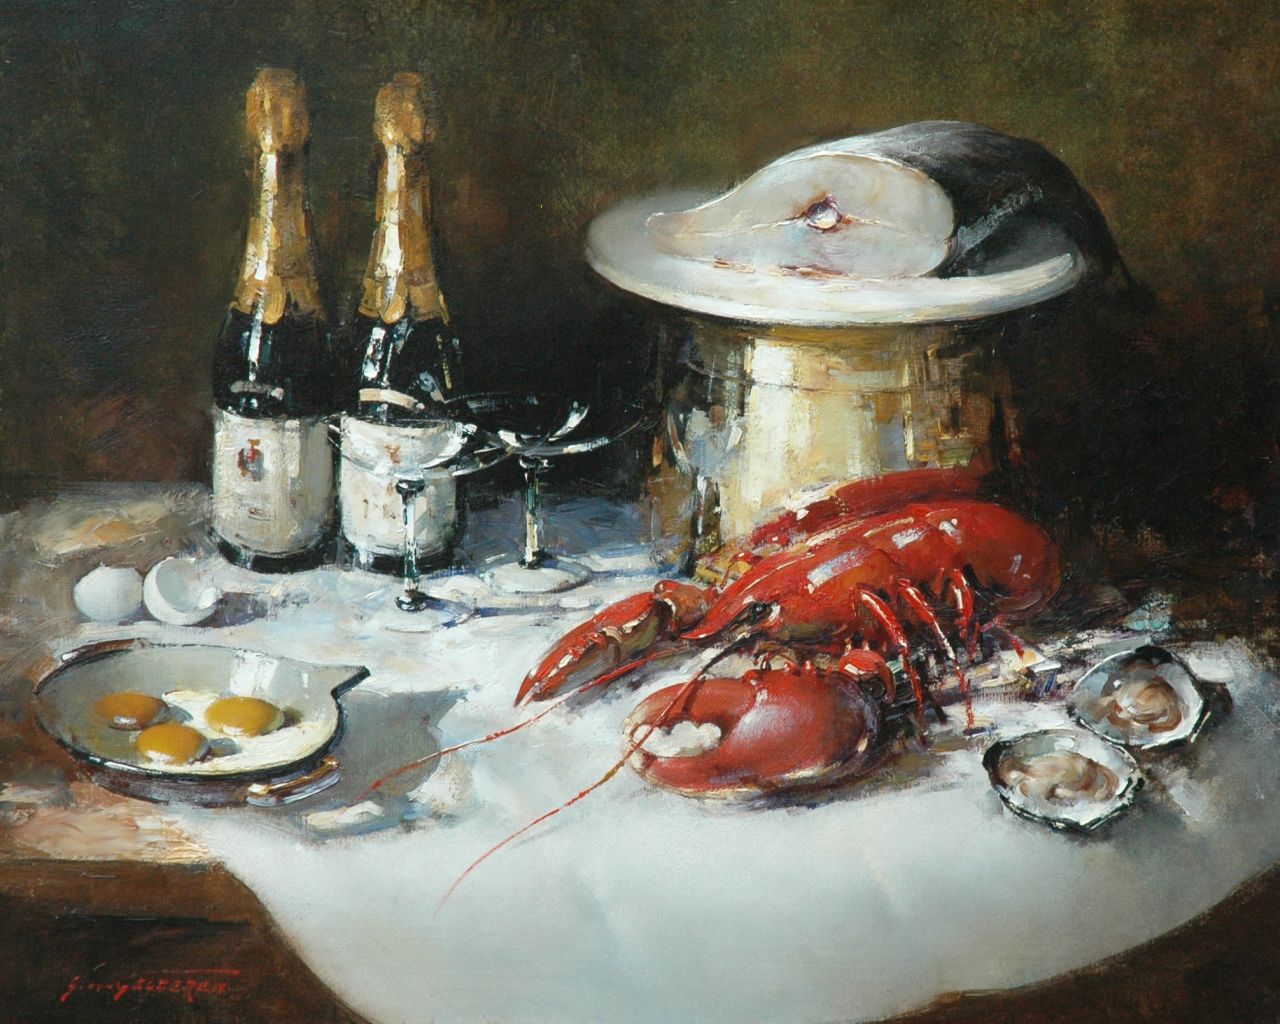 Gelderen S. van | Simon van Gelderen, Stilleven met een kreeft, vis en champagne, olieverf op doek 65,2 x 80,1 cm, gesigneerd linksonder